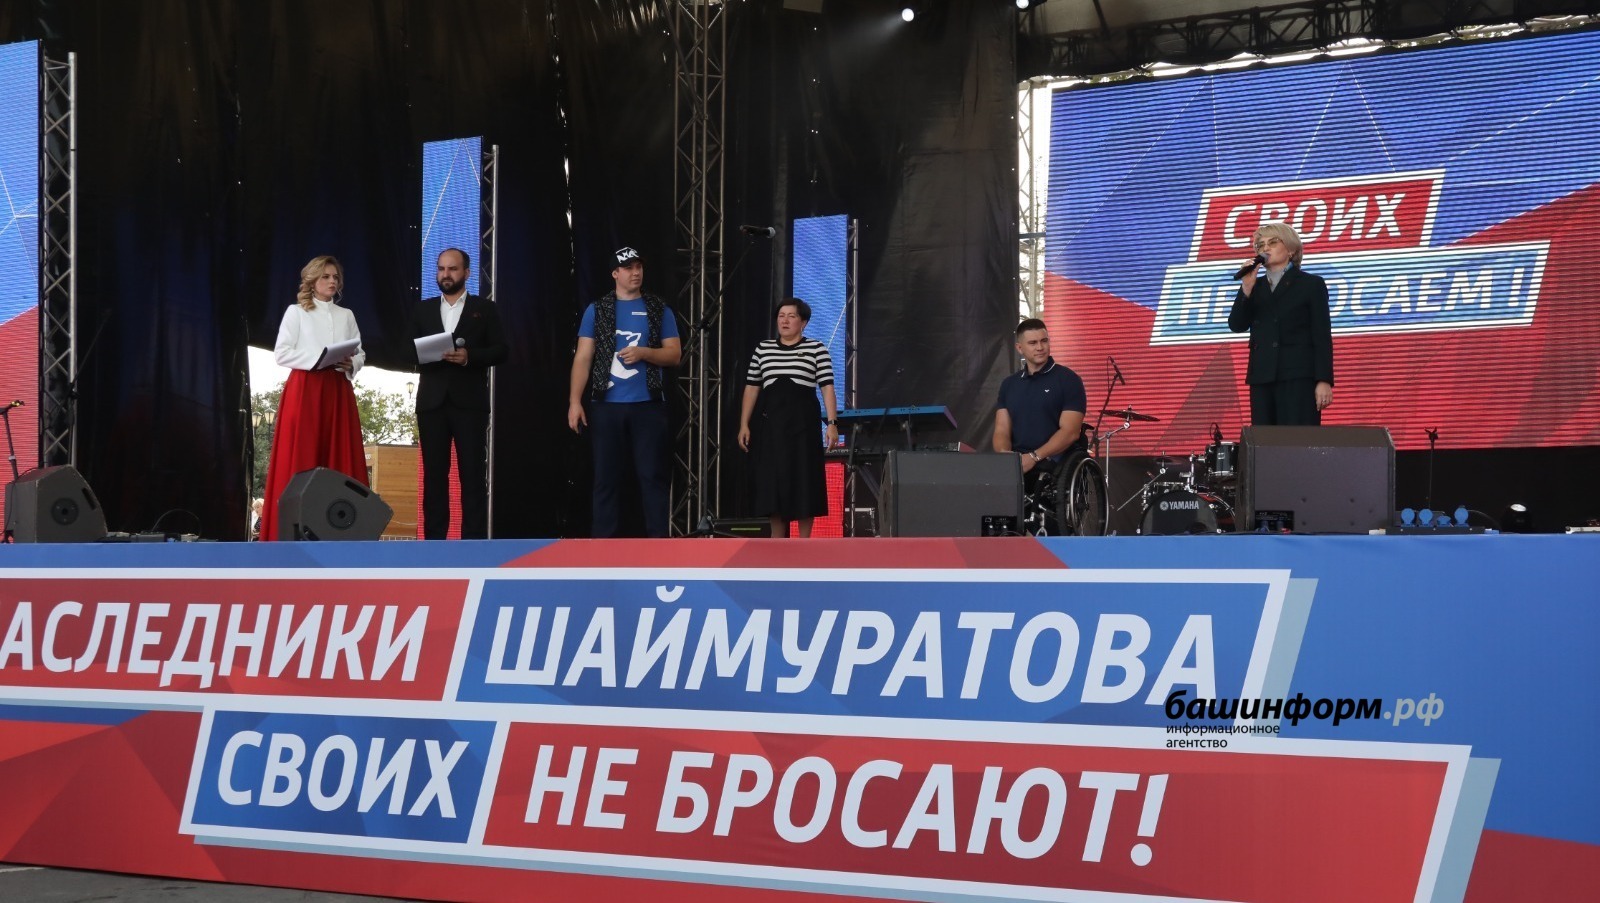 Өфөлә «Шайморатов вариҫтары үҙебеҙҙекеләрҙе ташламай!» митинг-концертына 20 меңдән ашыу кеше йыйылды